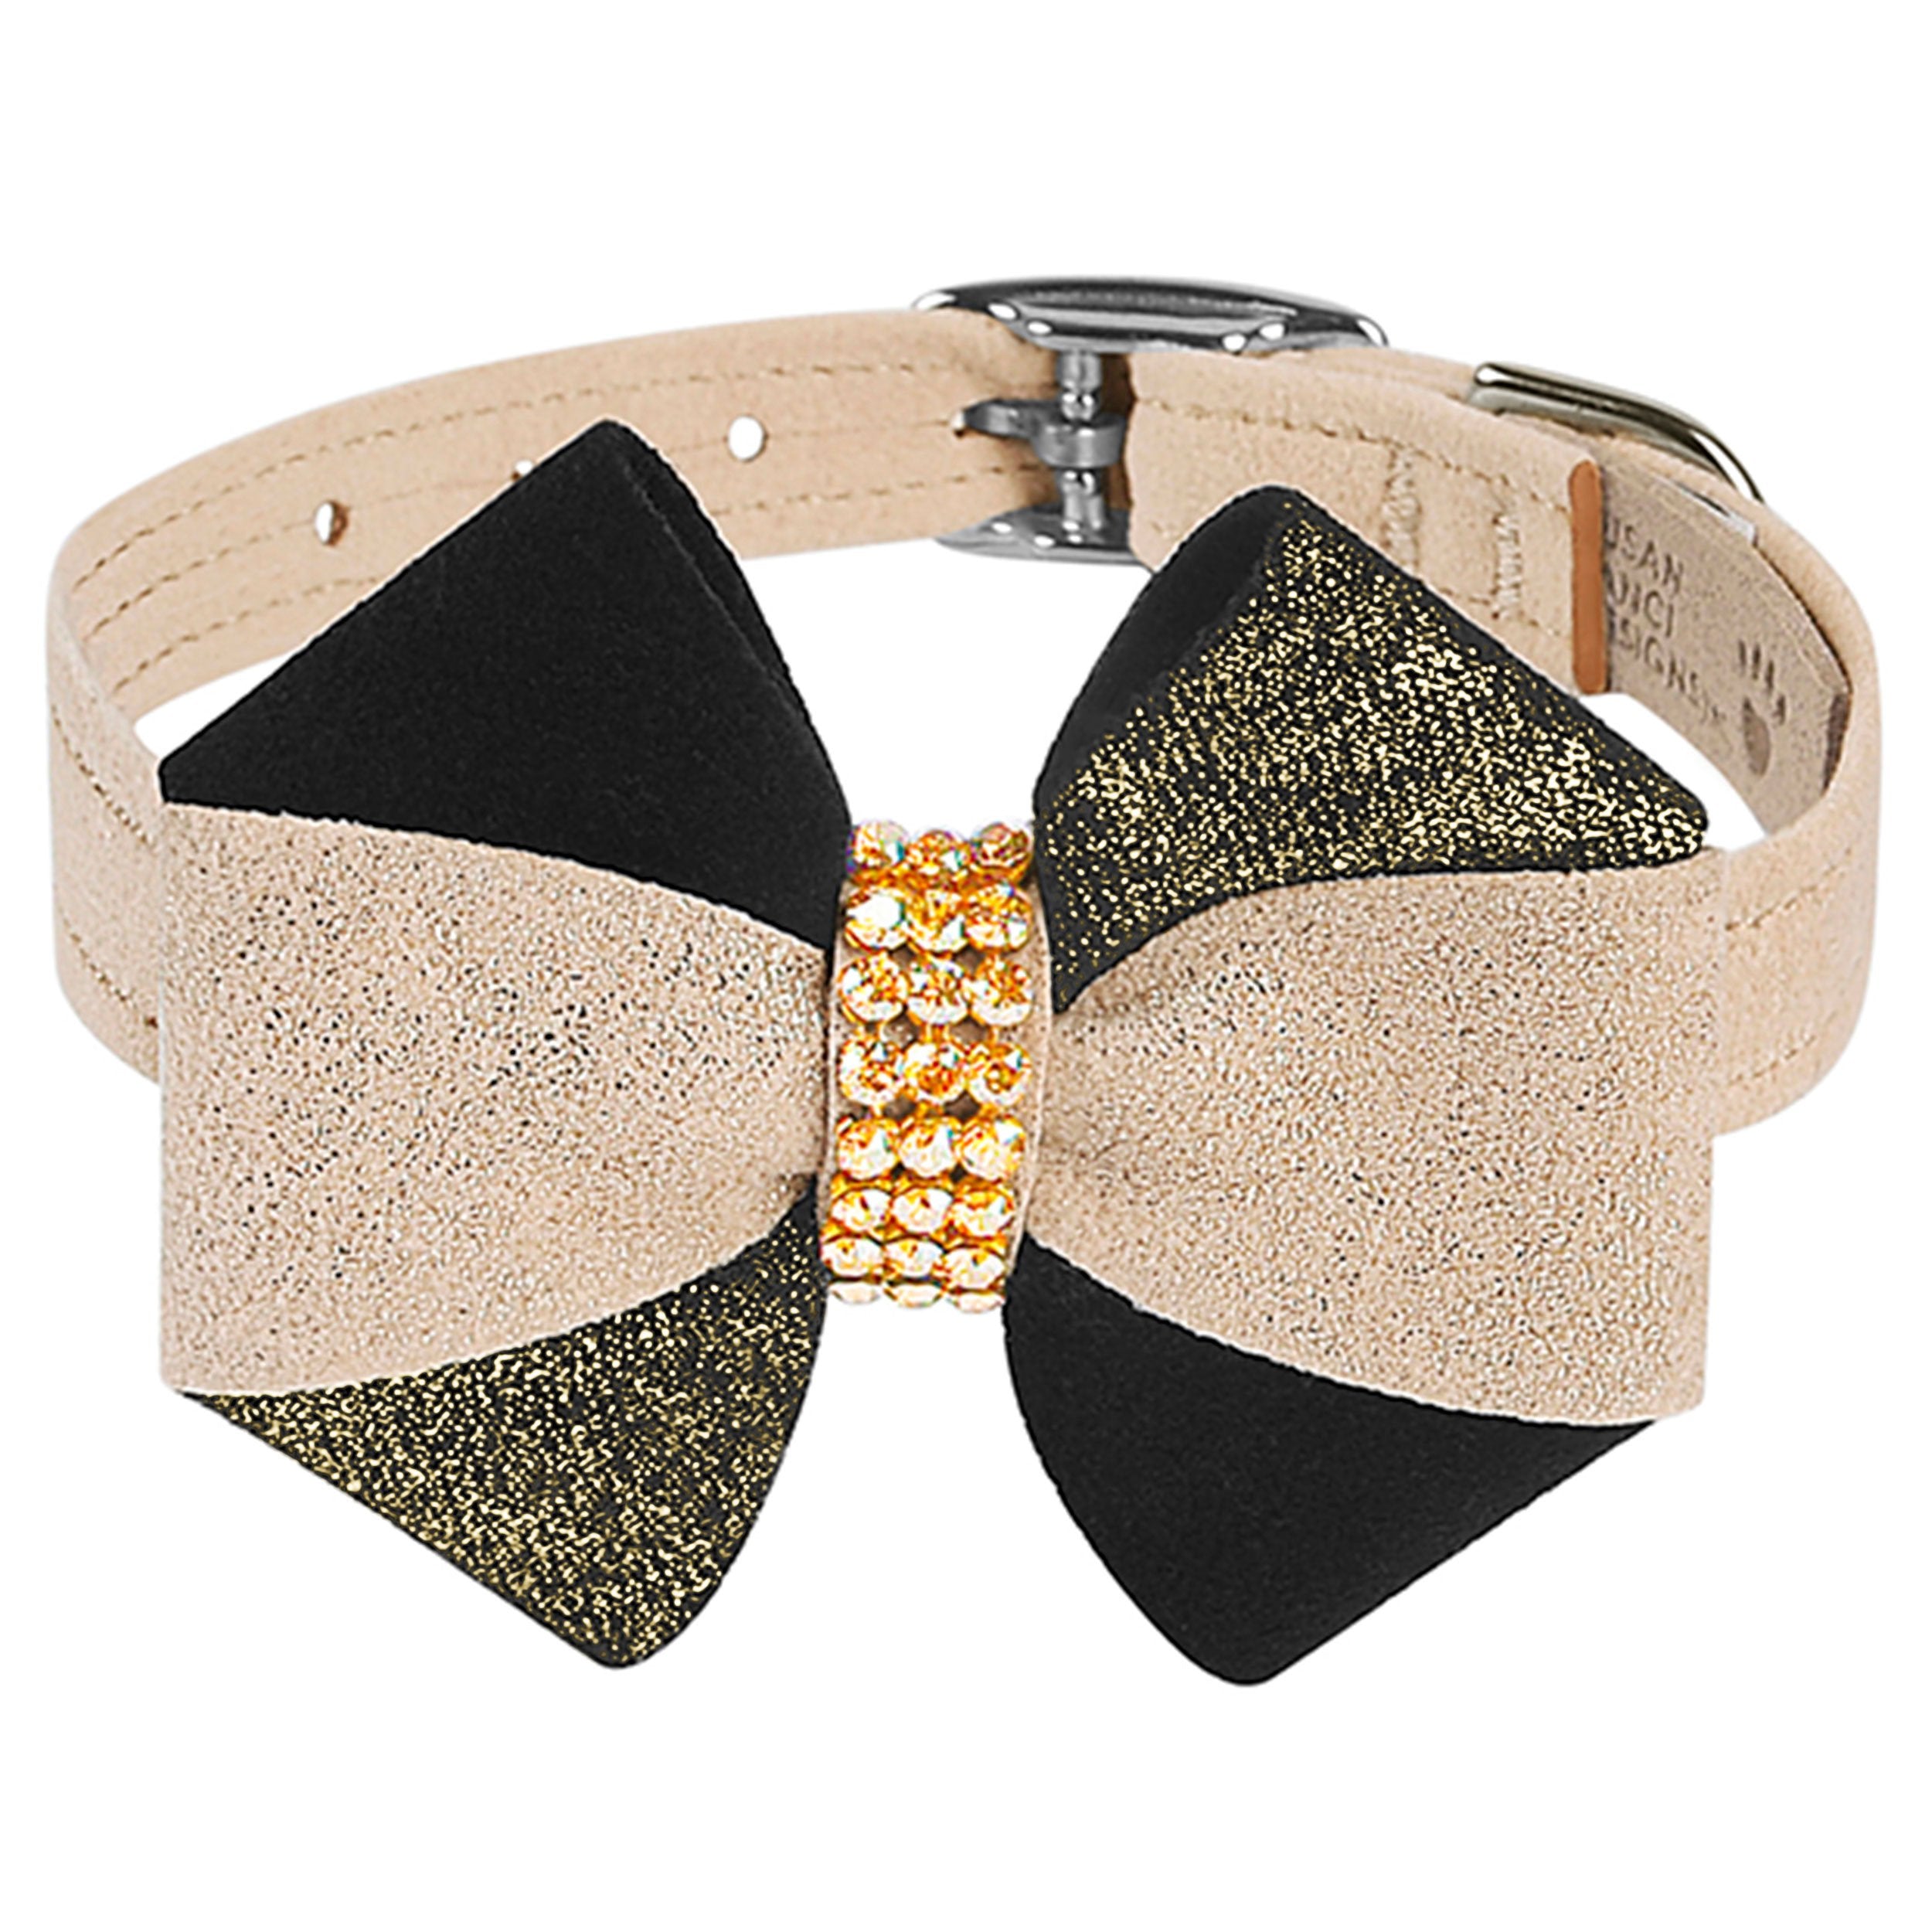 Glitzerati Pinwheel Bow Collar | Susan Lanci Designs | Reviews on Judge.me